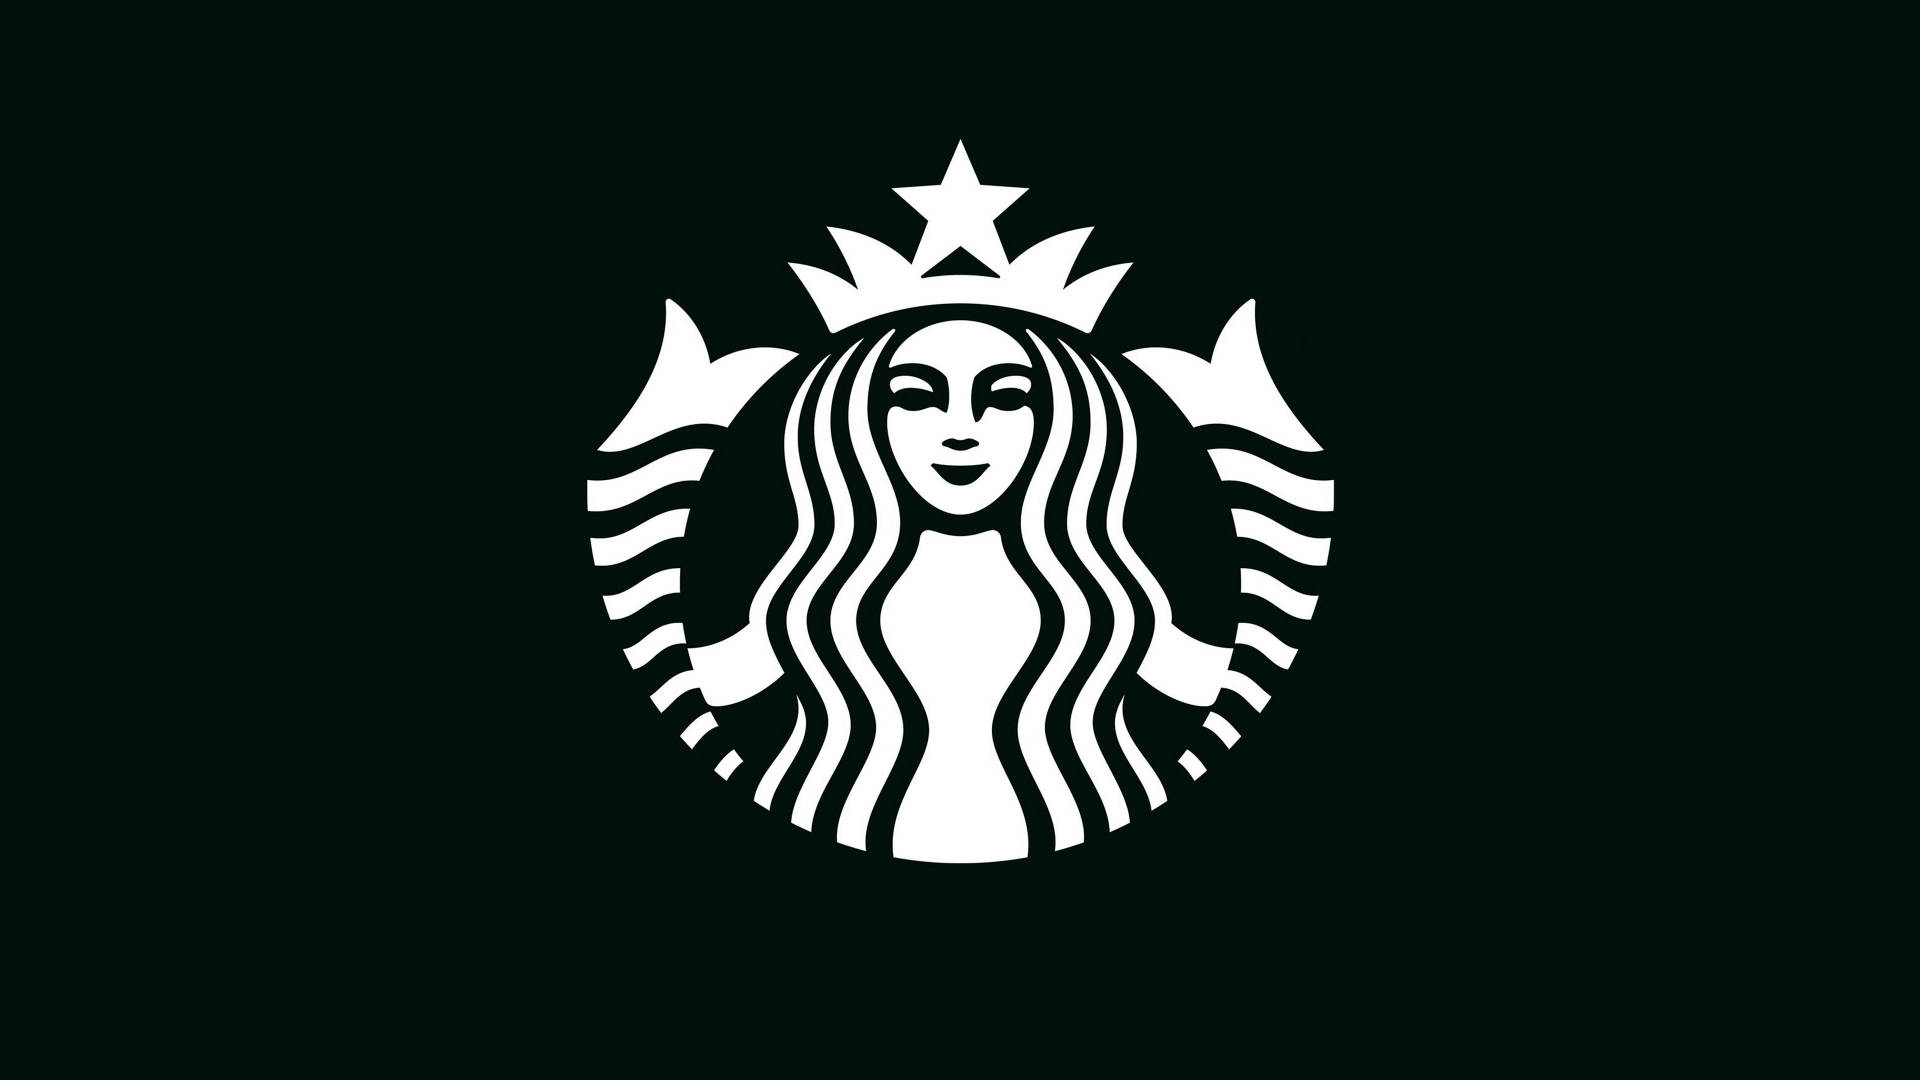 Starbucks Black And White Logo Wallpaper